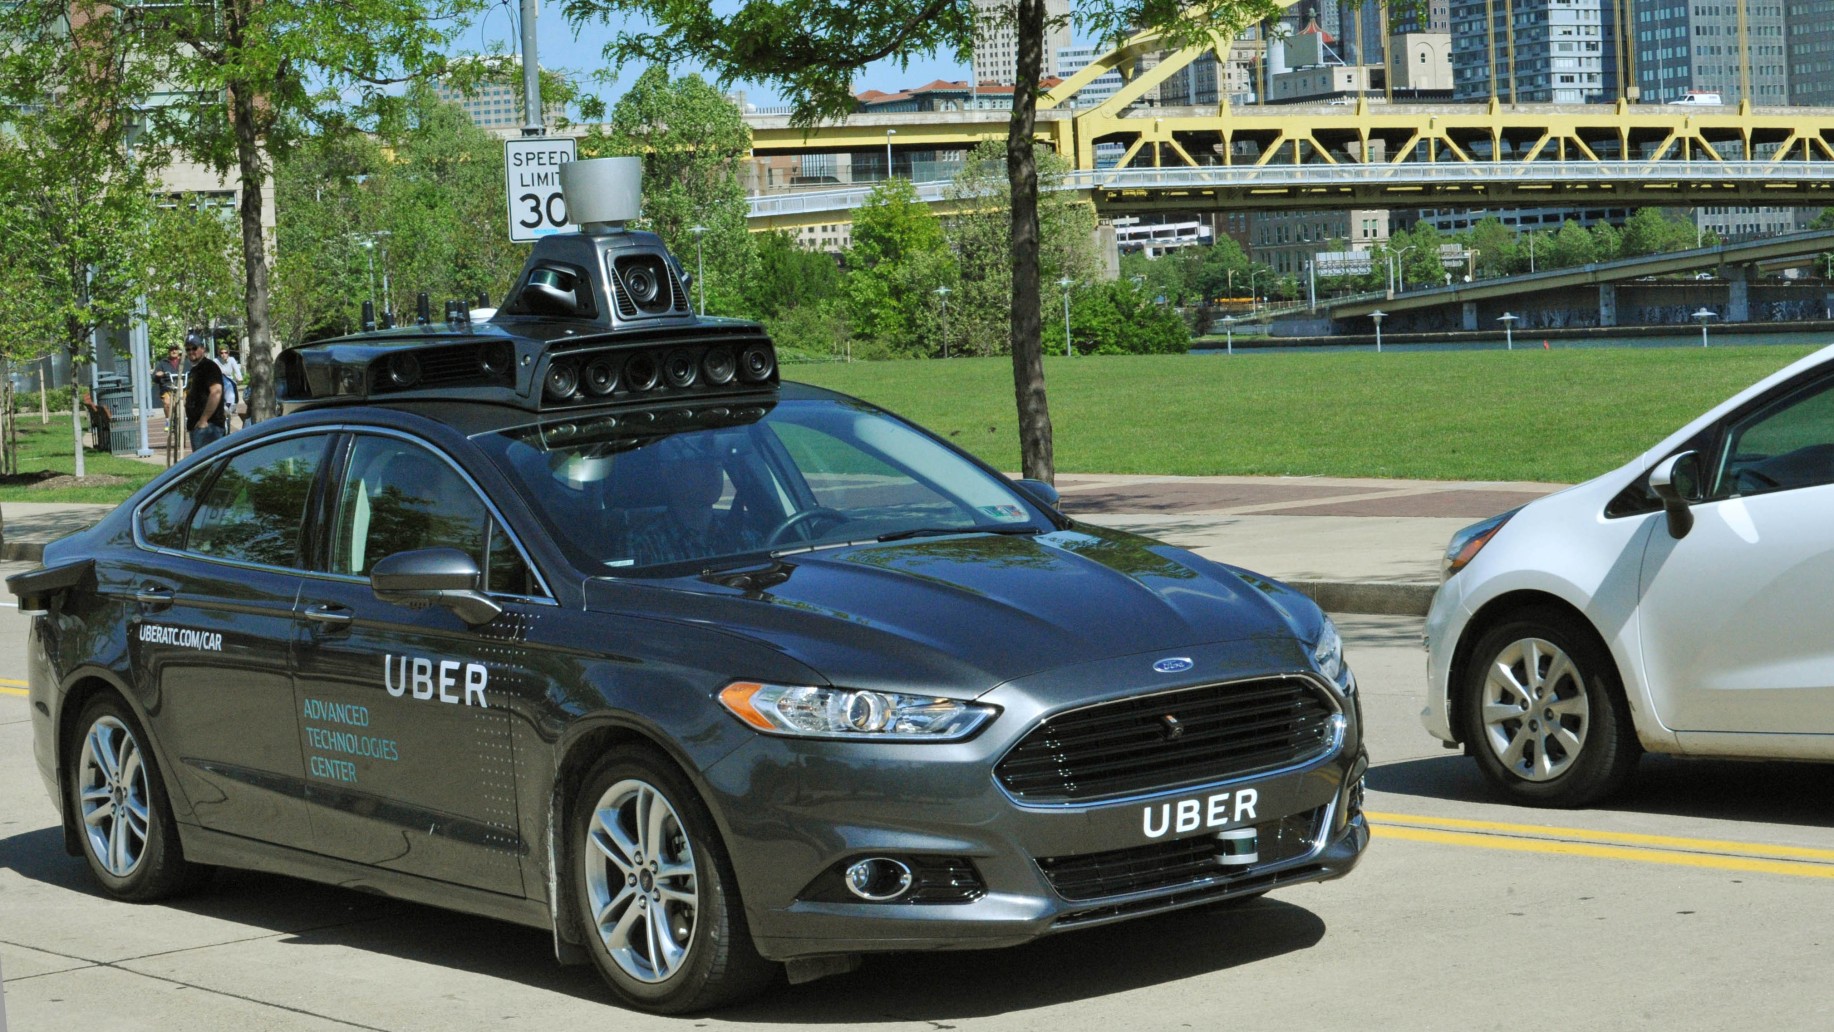 Med radar, laser og høyoppløste kameraer ombord skal Ubers nye prosjekt gjøre førerløse biler en realitet for selskapet.